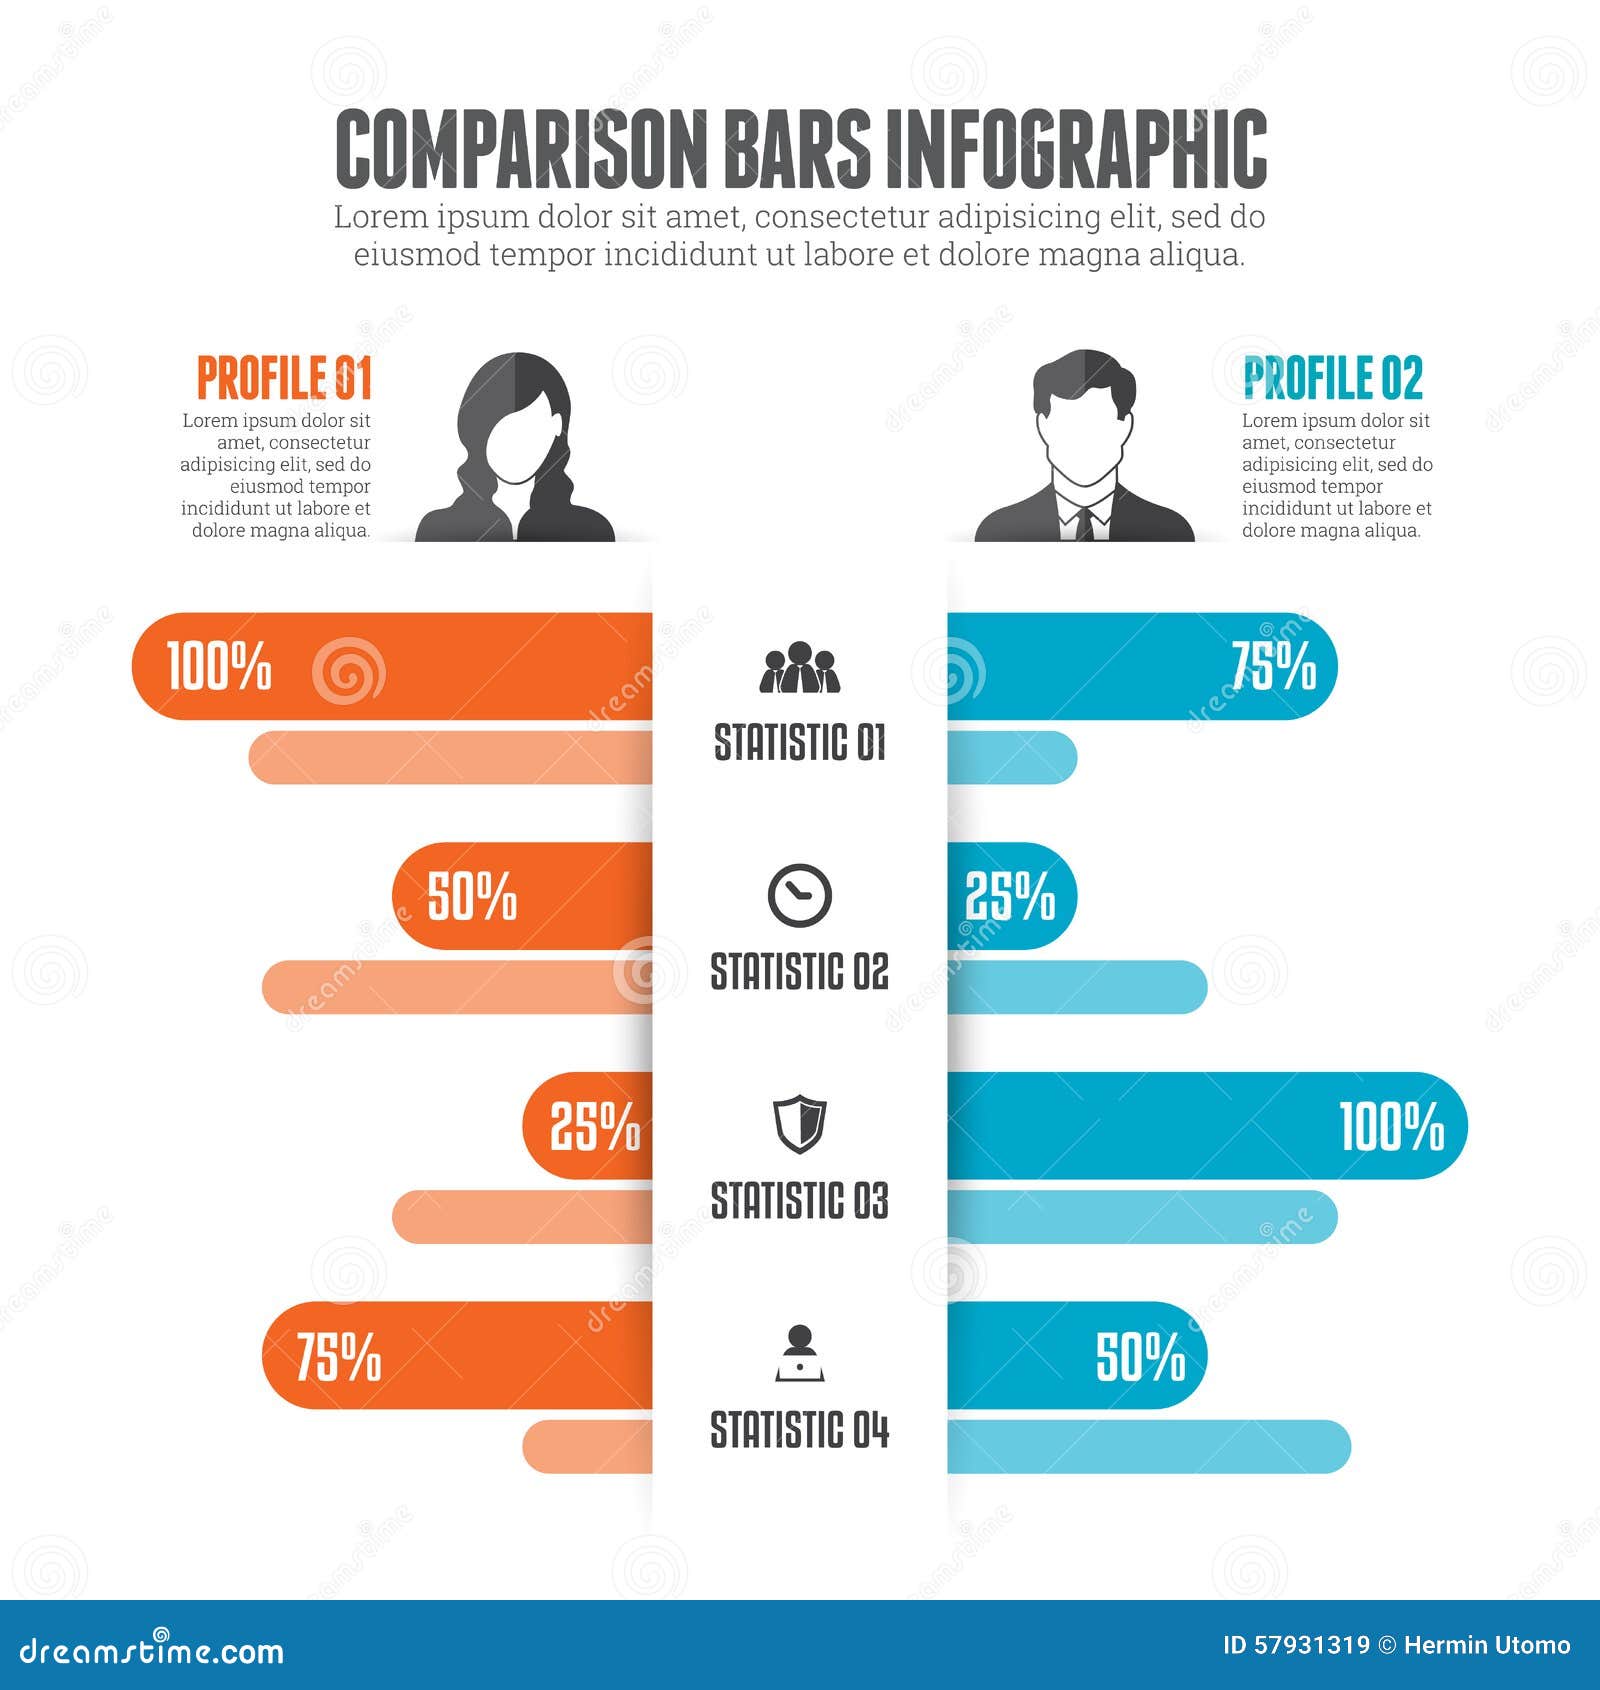 comparison bars infographic